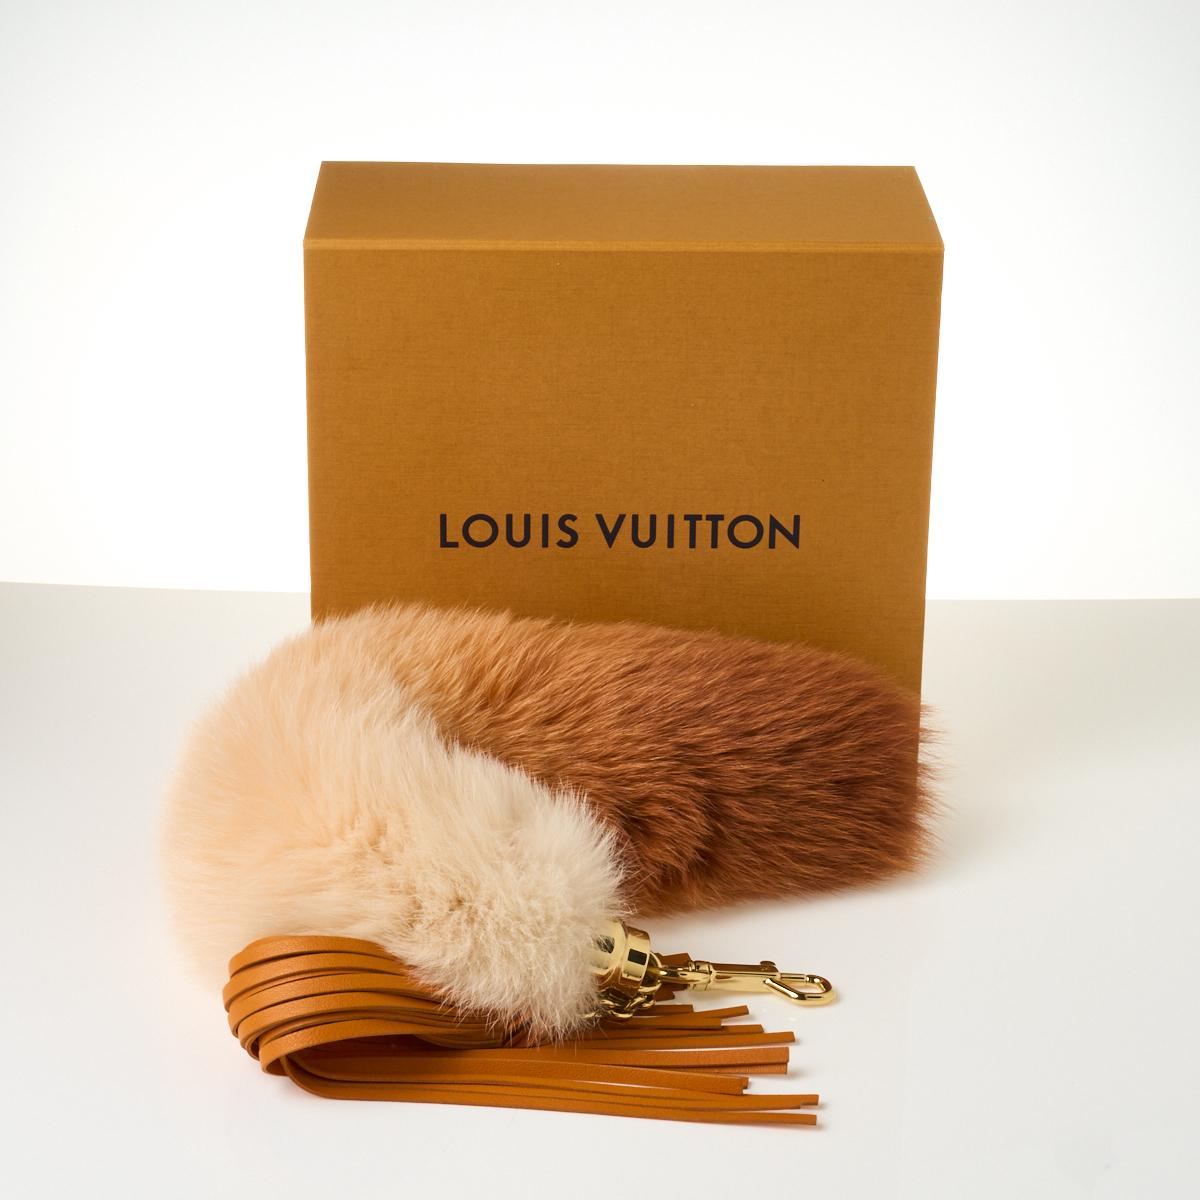 Sold at Auction: Louis Vuitton, LOUIS VUITTON TASSEL BAG CHARM